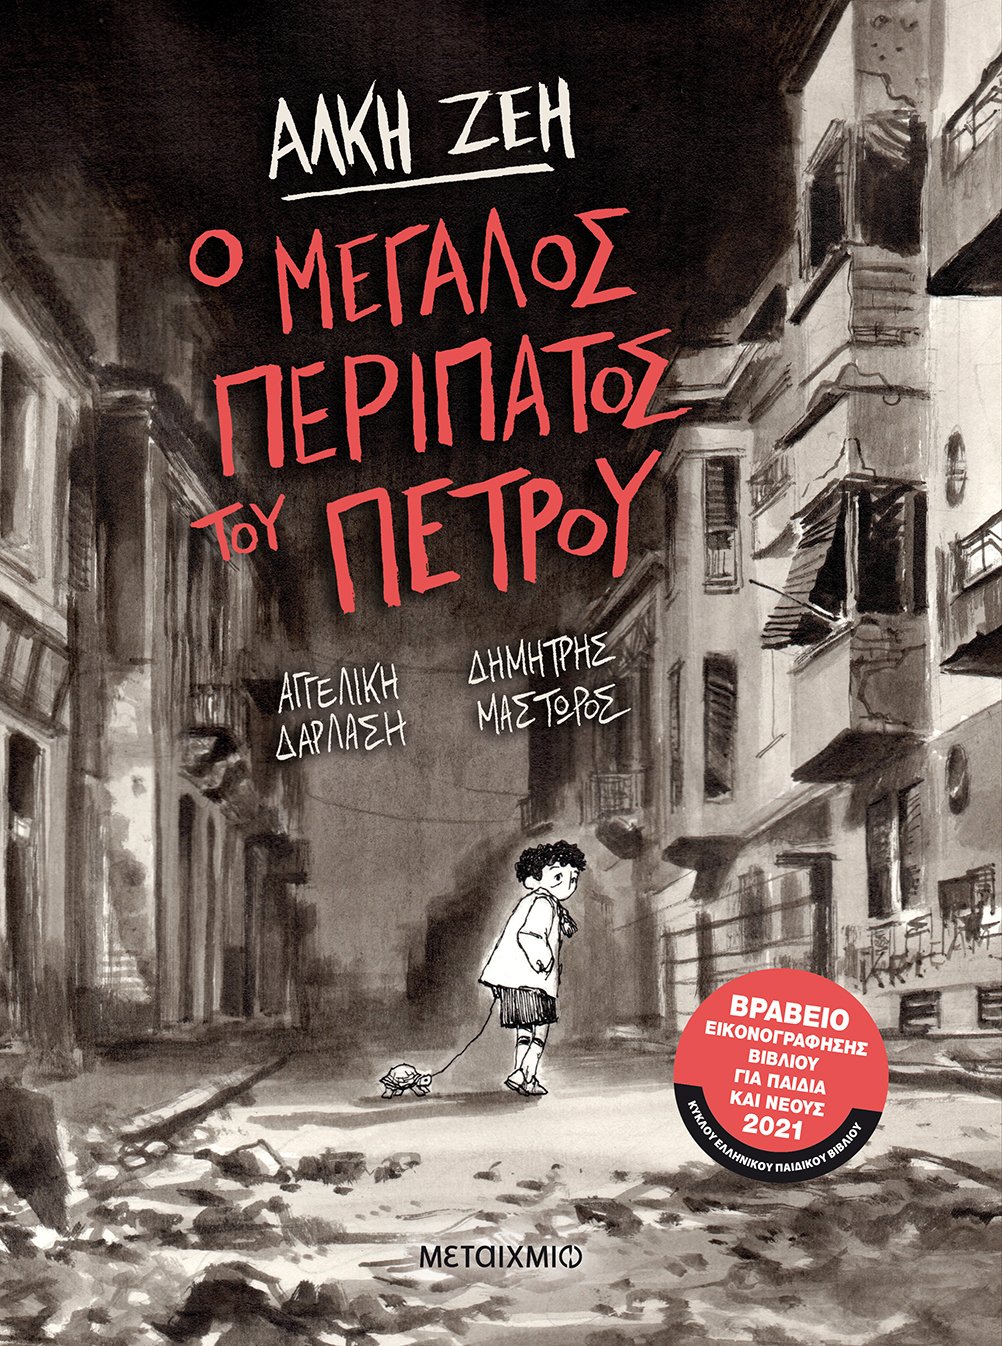 2020, Μαστώρος, Δημήτρης (), Ο μεγάλος περίπατος του Πέτρου, , Ζέη, Άλκη, 1923-2020, Μεταίχμιο